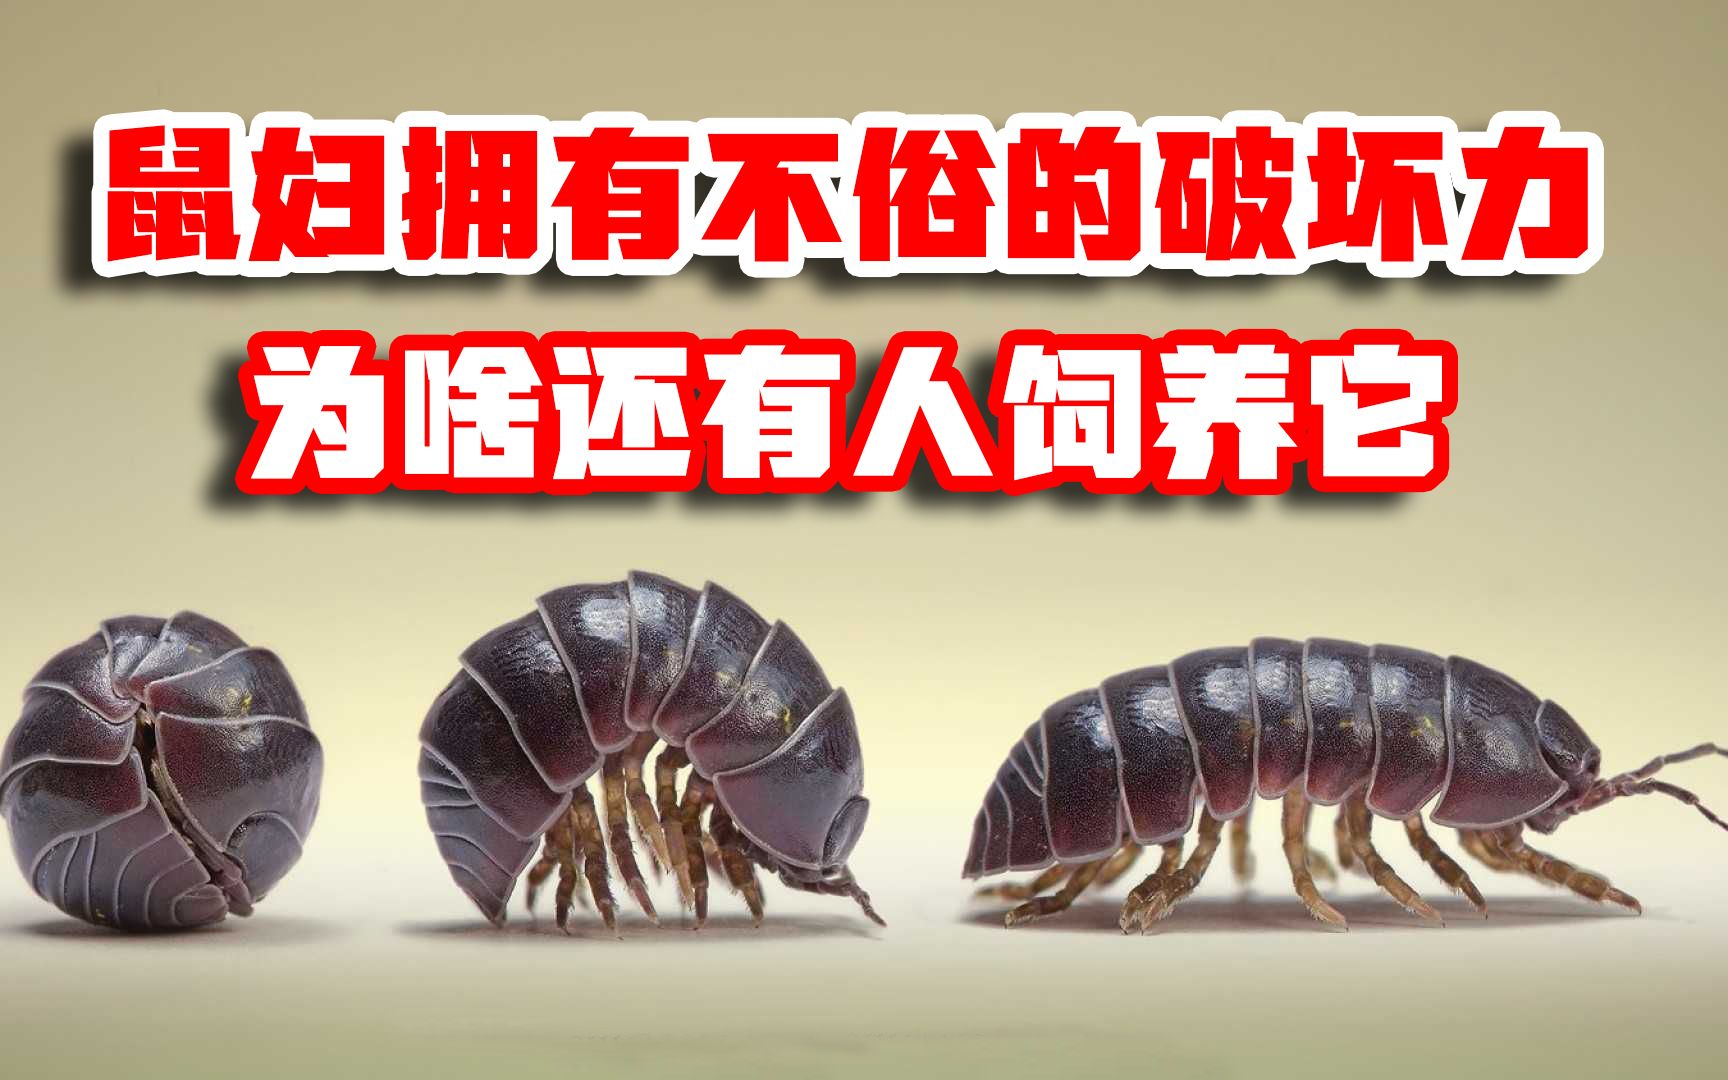 工厂灭虫方法 - 灭虫 - 南充市有害生物防治协会